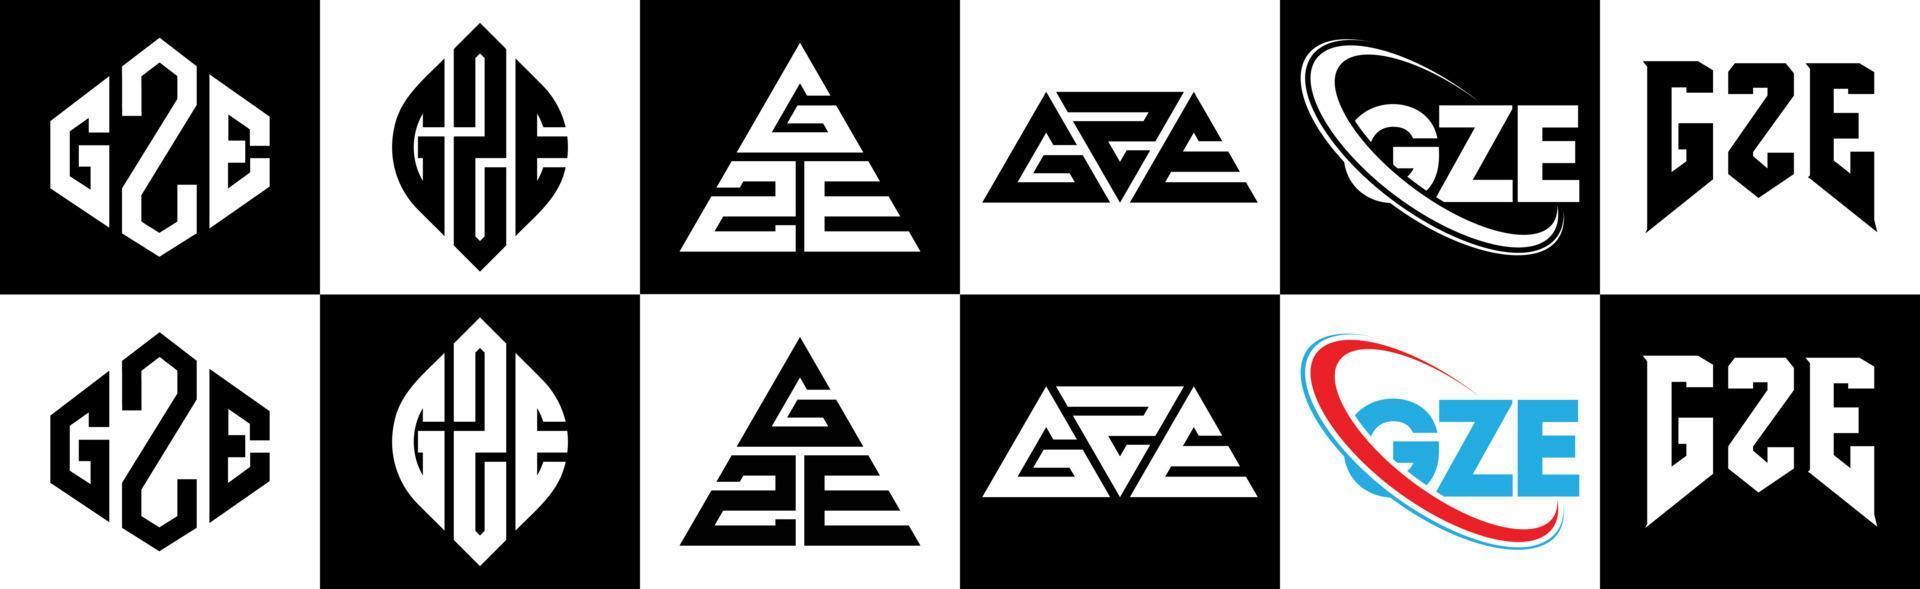 gze lettera logo design nel sei stile. gze poligono, cerchio, triangolo, esagono, piatto e semplice stile con nero e bianca colore variazione lettera logo impostato nel uno tavola da disegno. gze minimalista e classico logo vettore